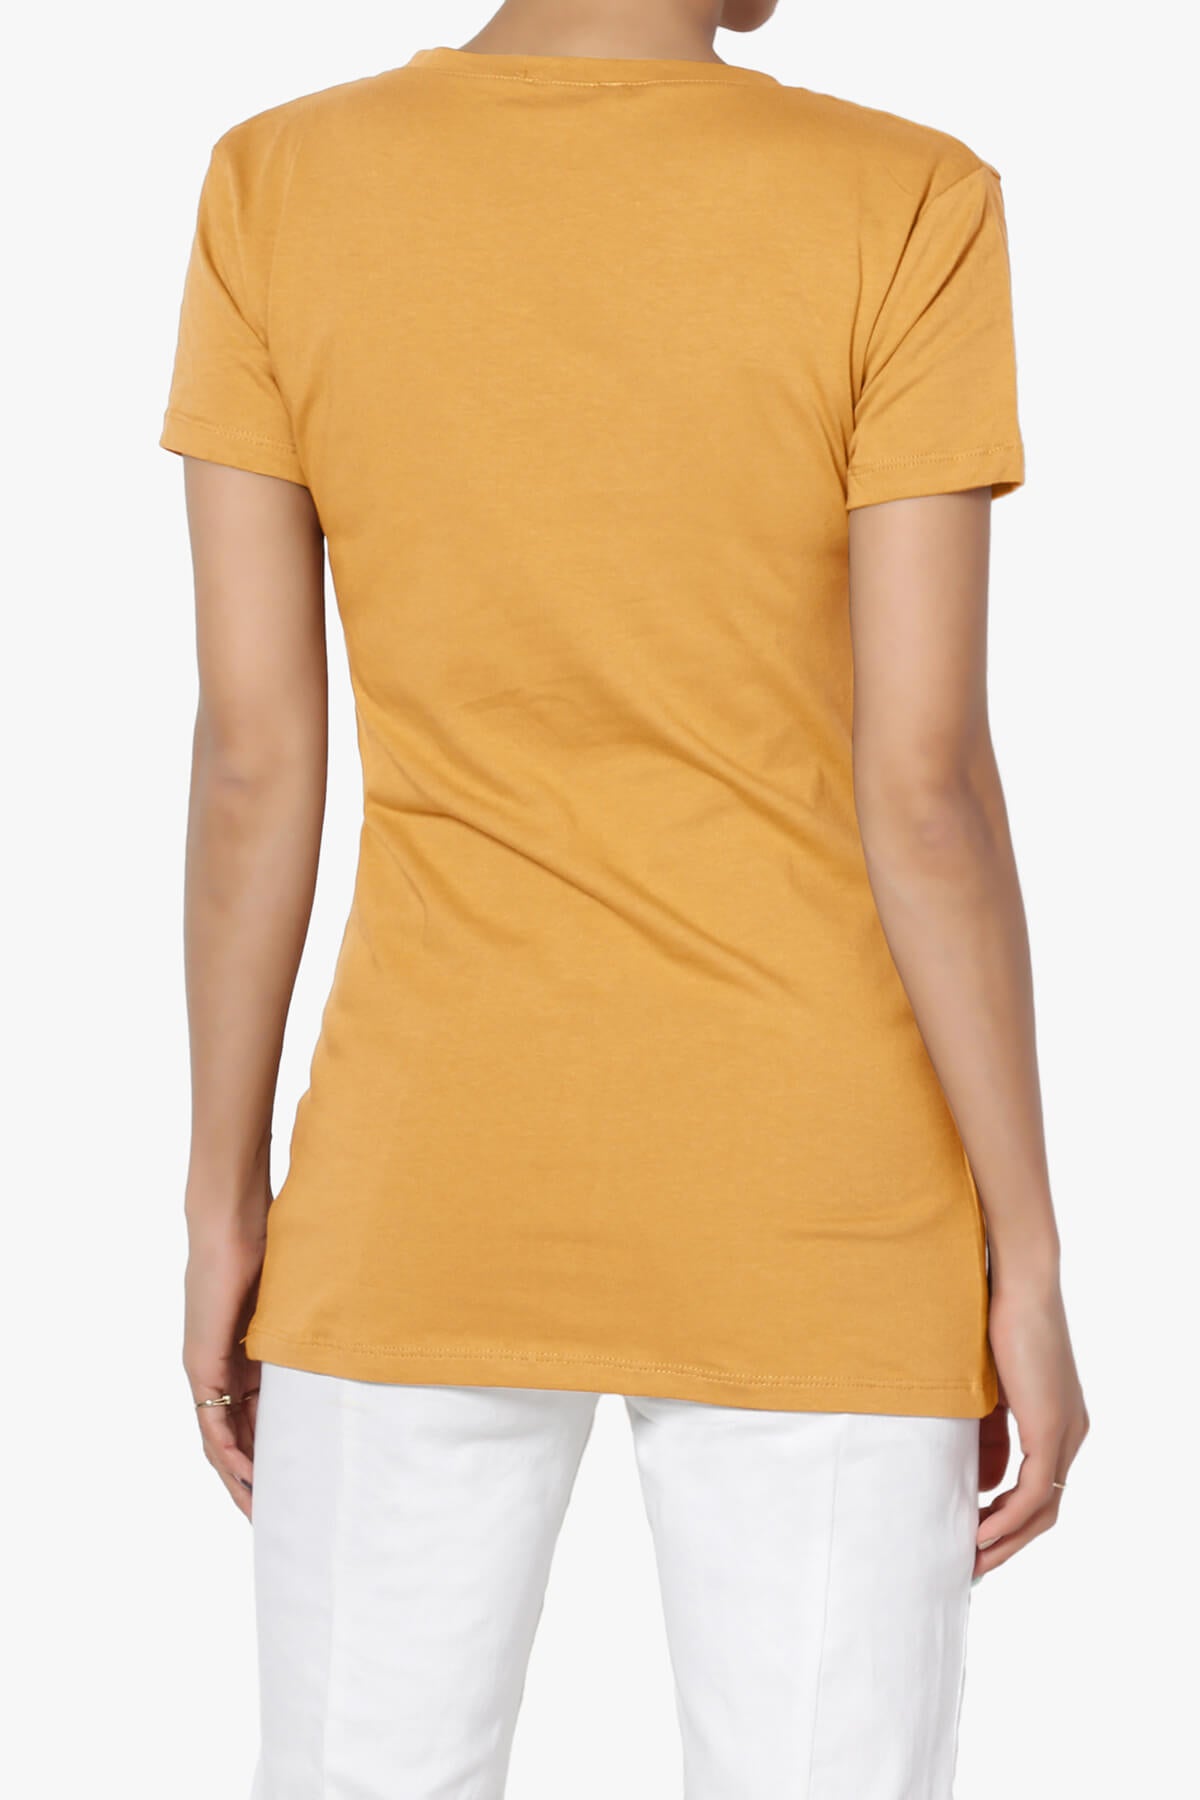 Candela V-Neck Short Sleeve T-Shirts GOLDEN MUSTARD_2